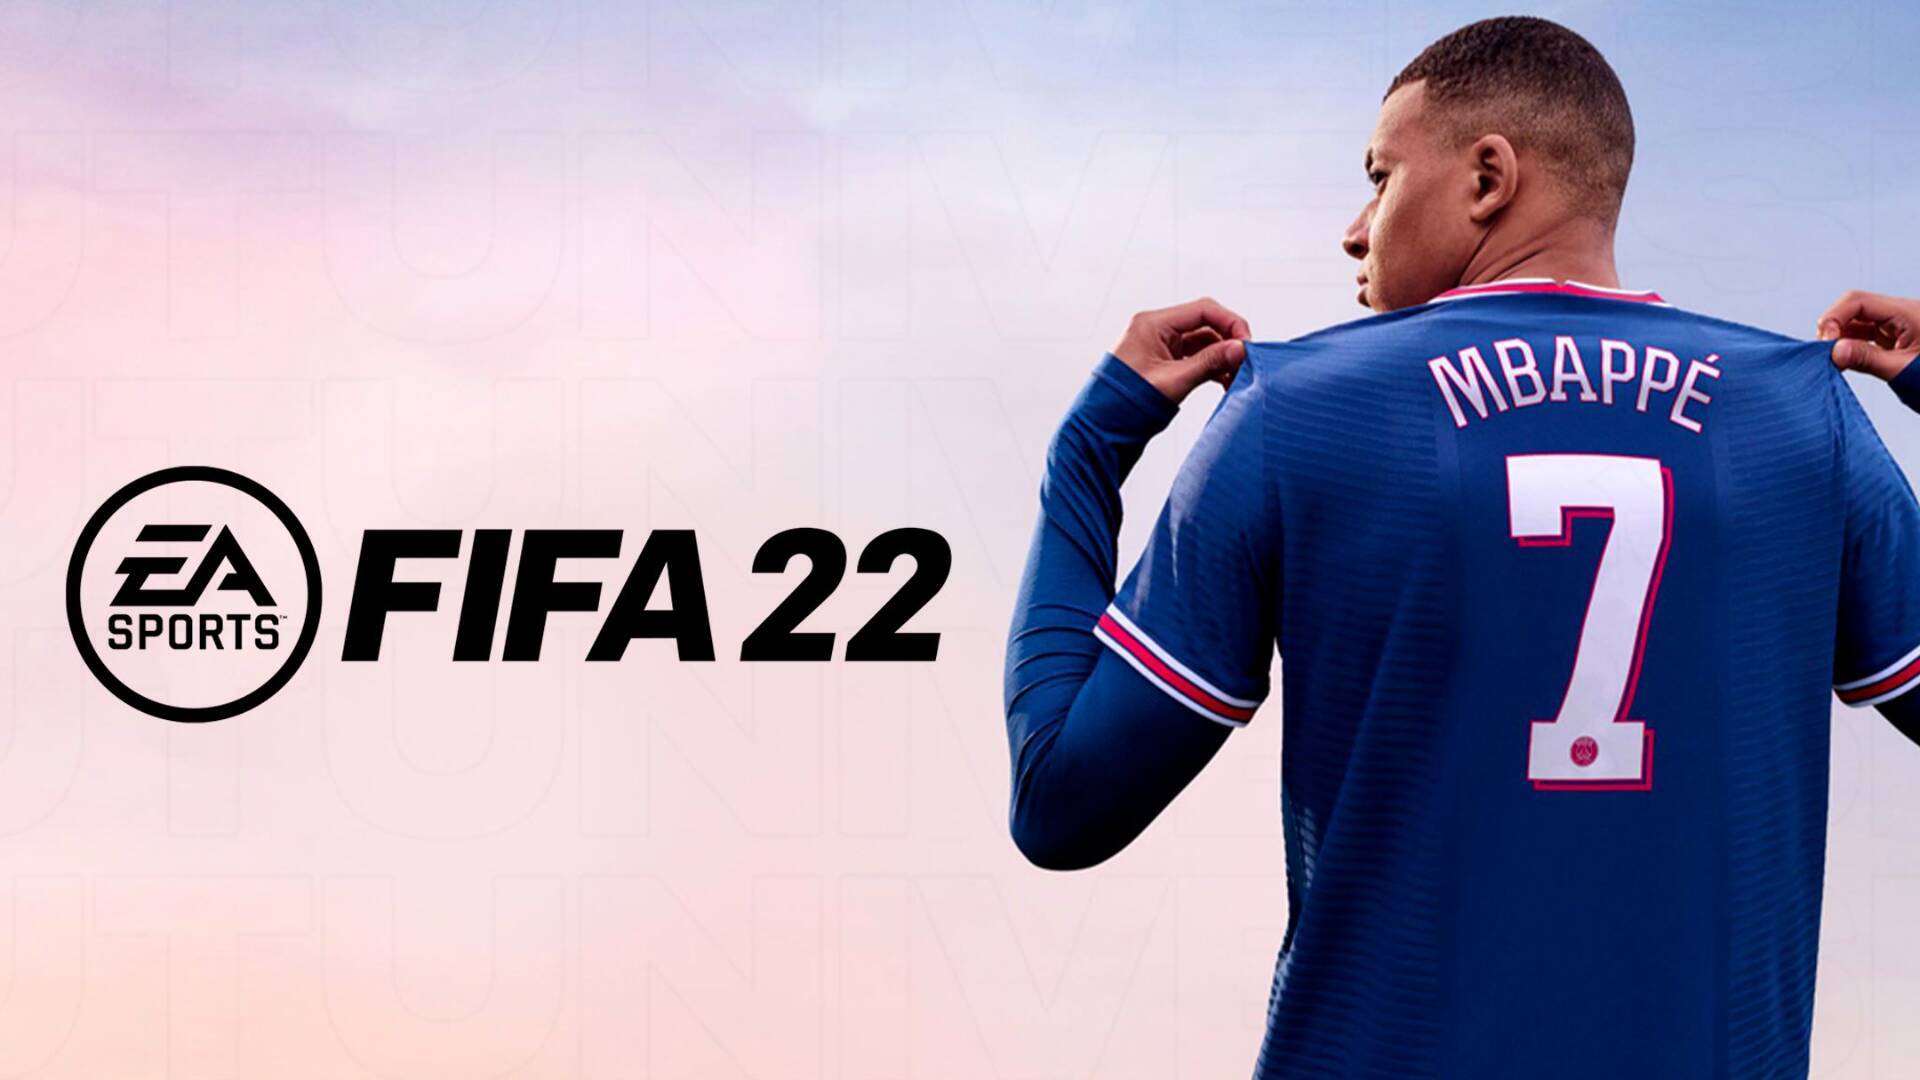 لعبة فيفا 2022 الرسمية للاندرويد والكمبيوتر اخر إصدار FIFA 22 MOBILE Android